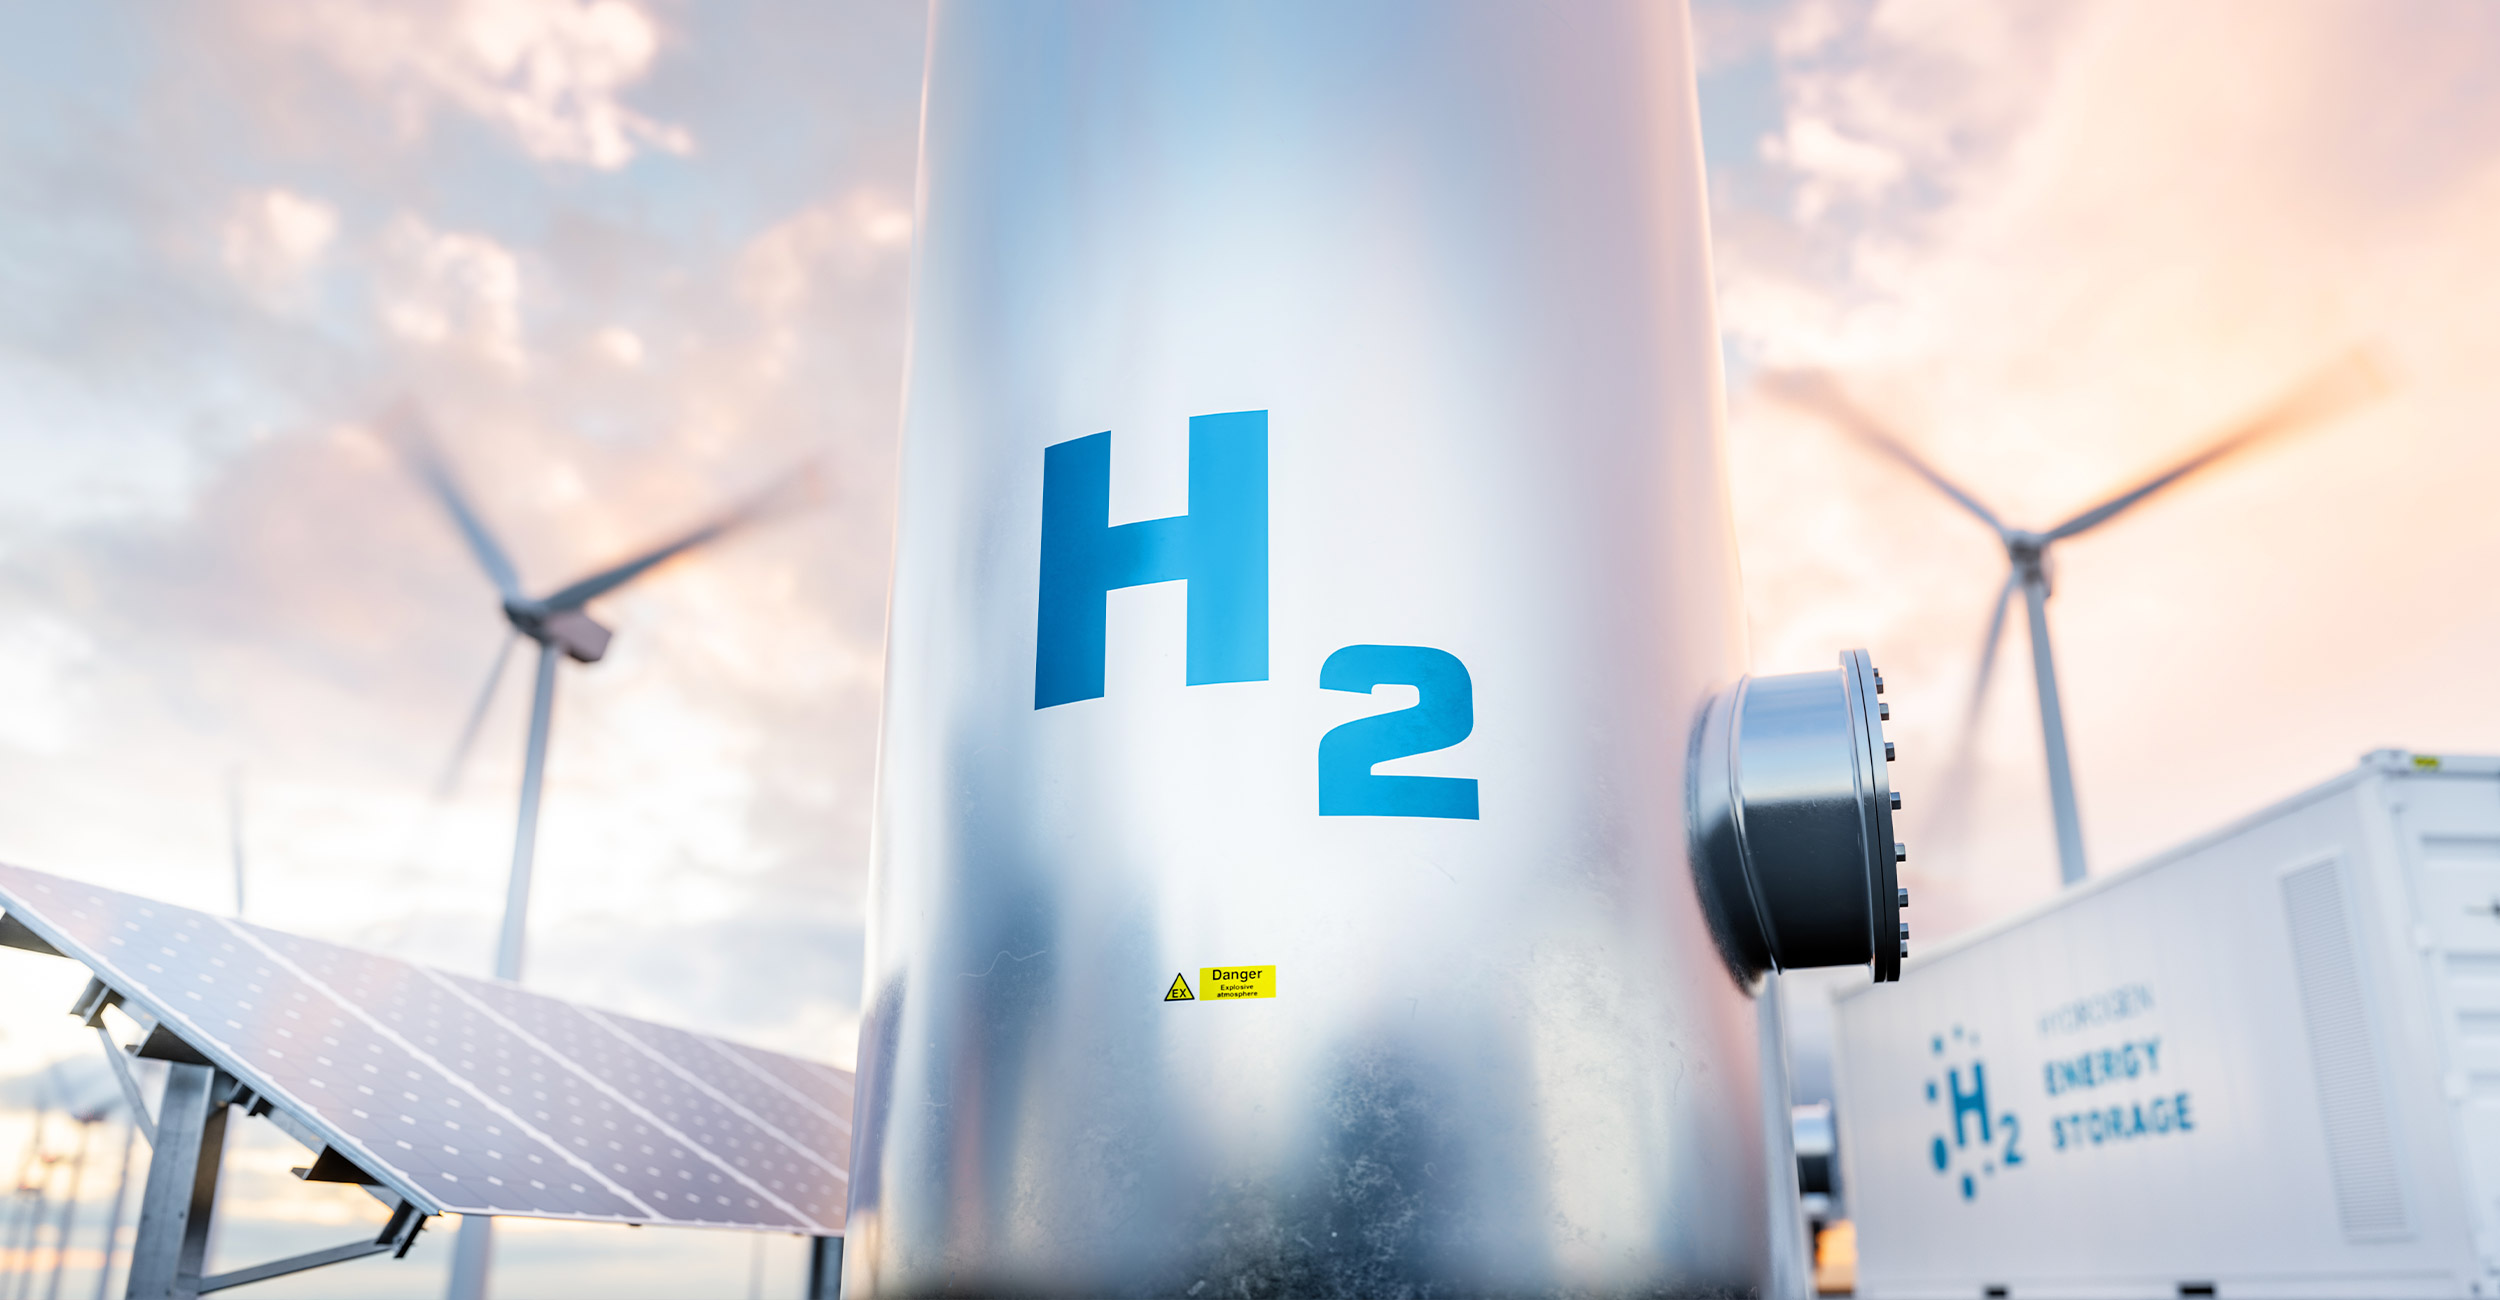 Wasserstoff: Chancen und Risiken einer vielversprechenden Technologie